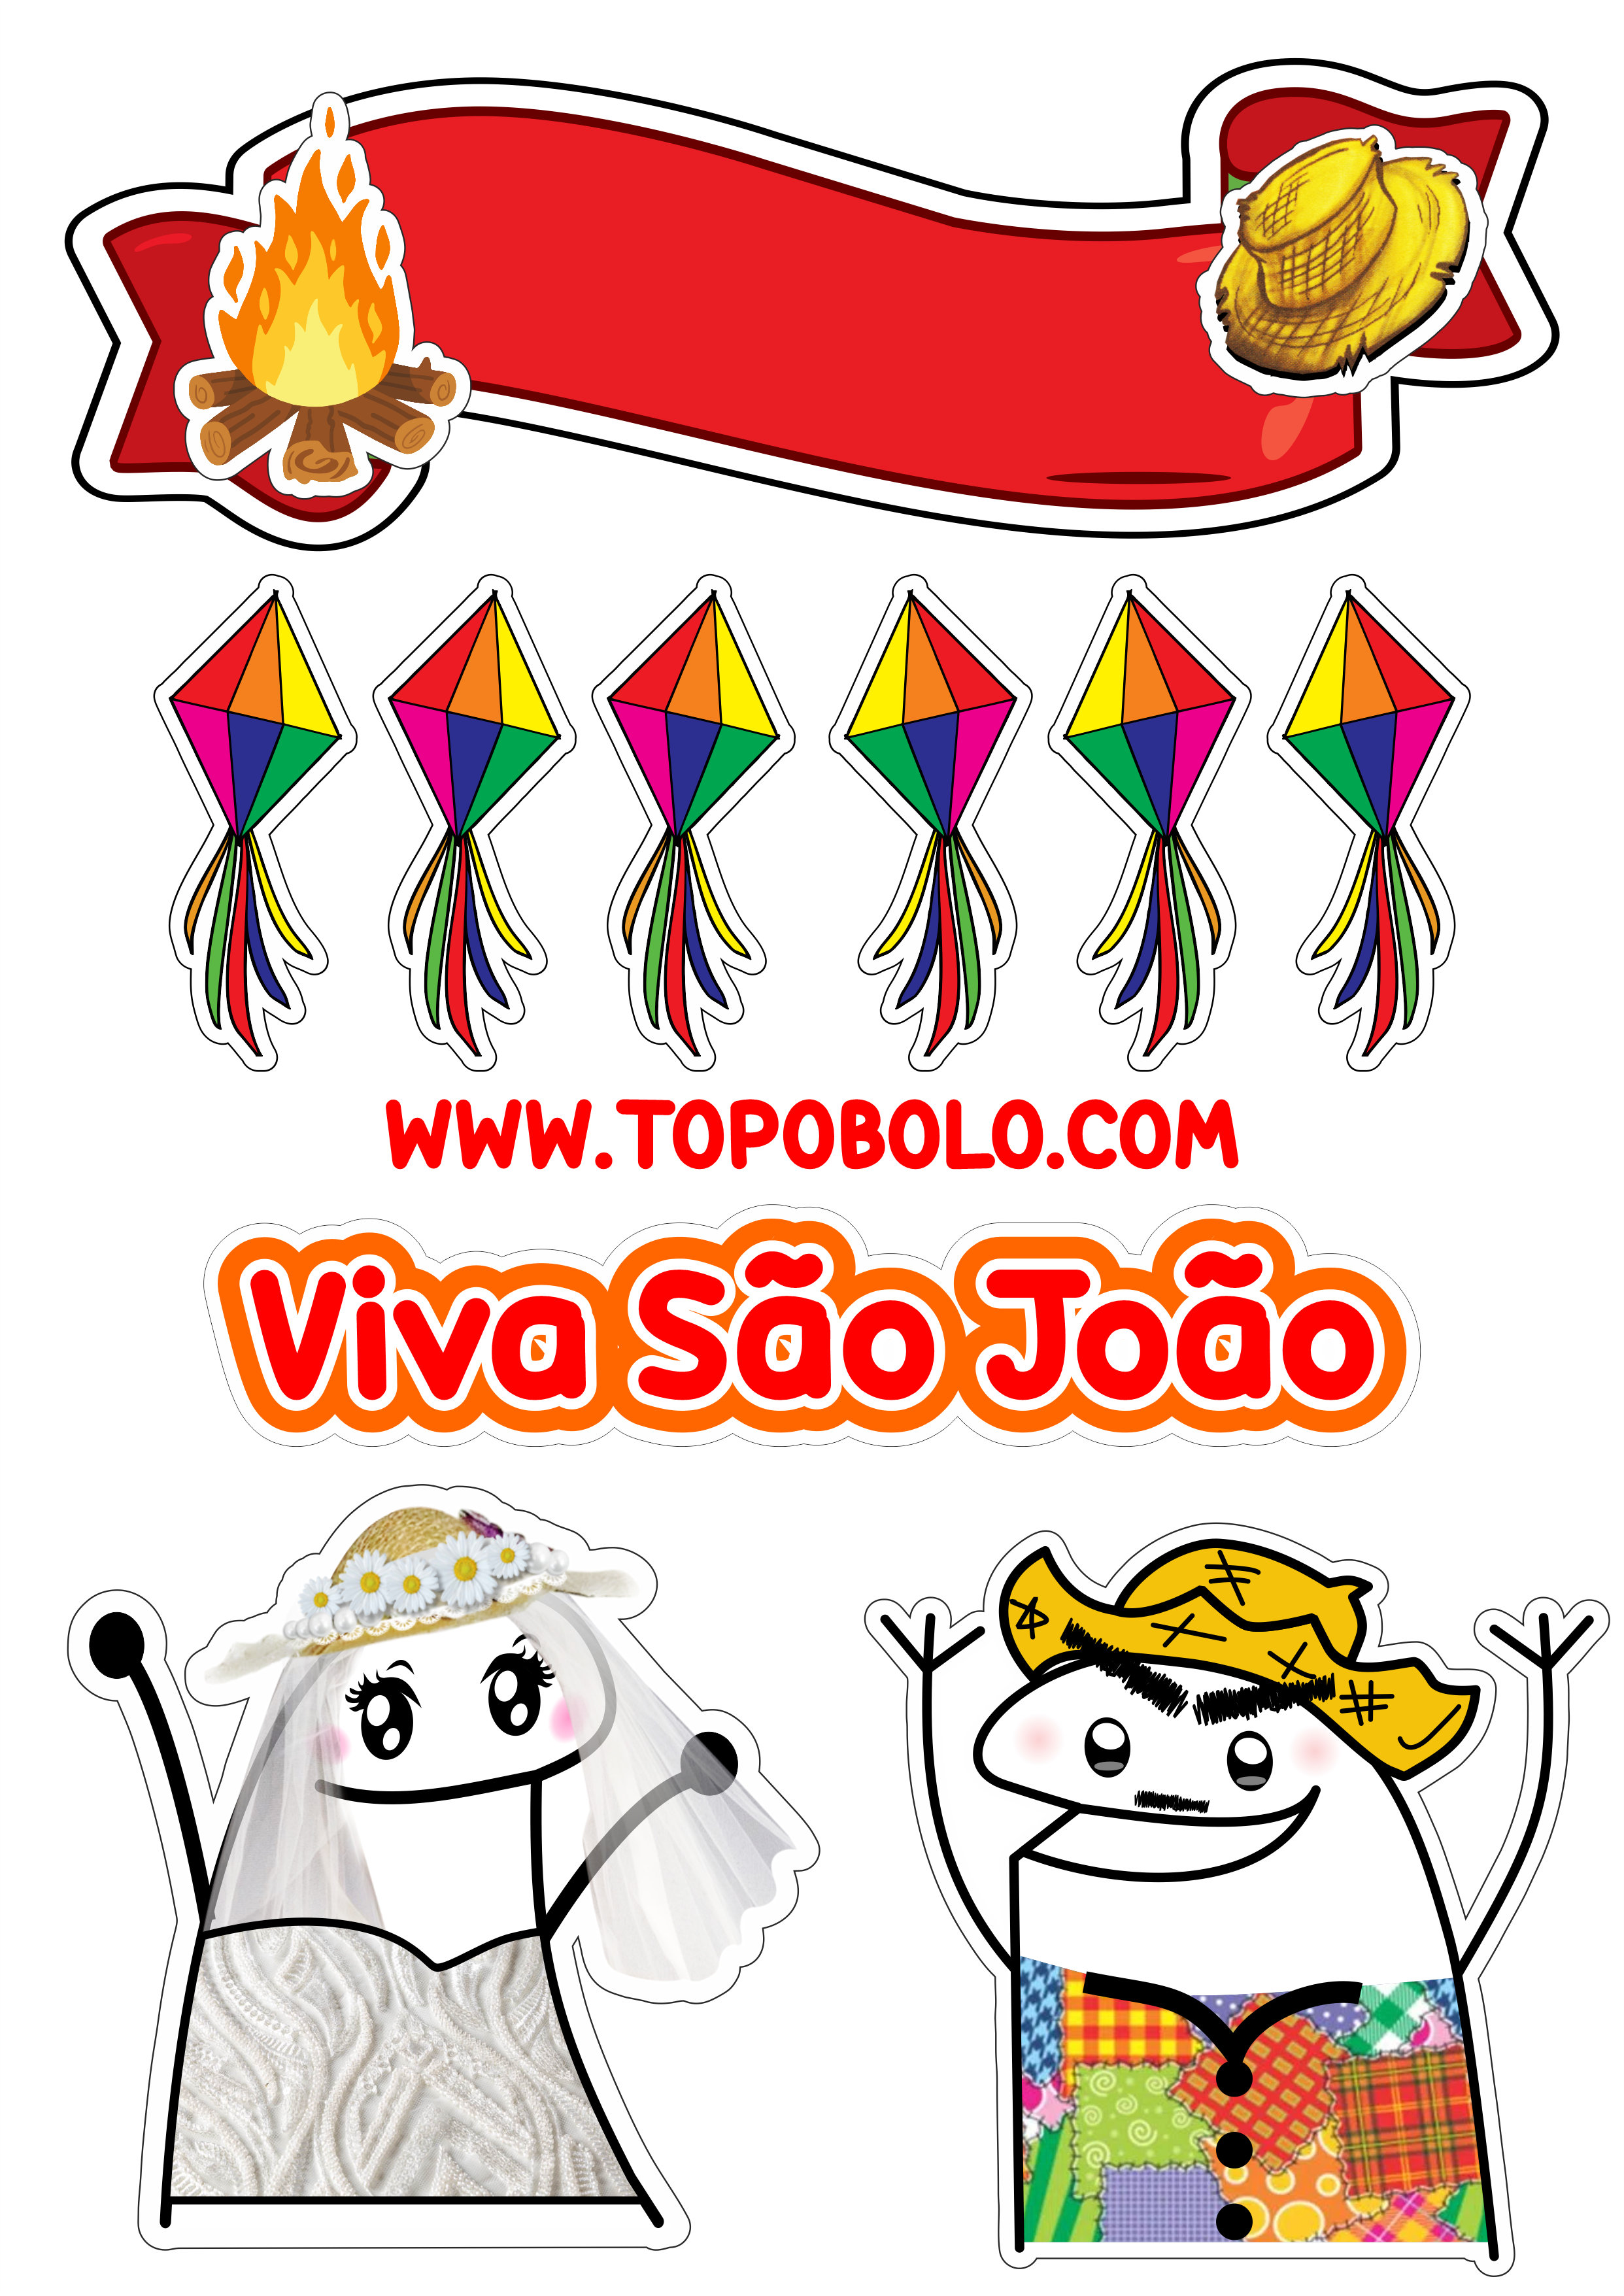 Topo de bolo para imprimir flork festa junina viva São João quadrilha caipira balões decoração png